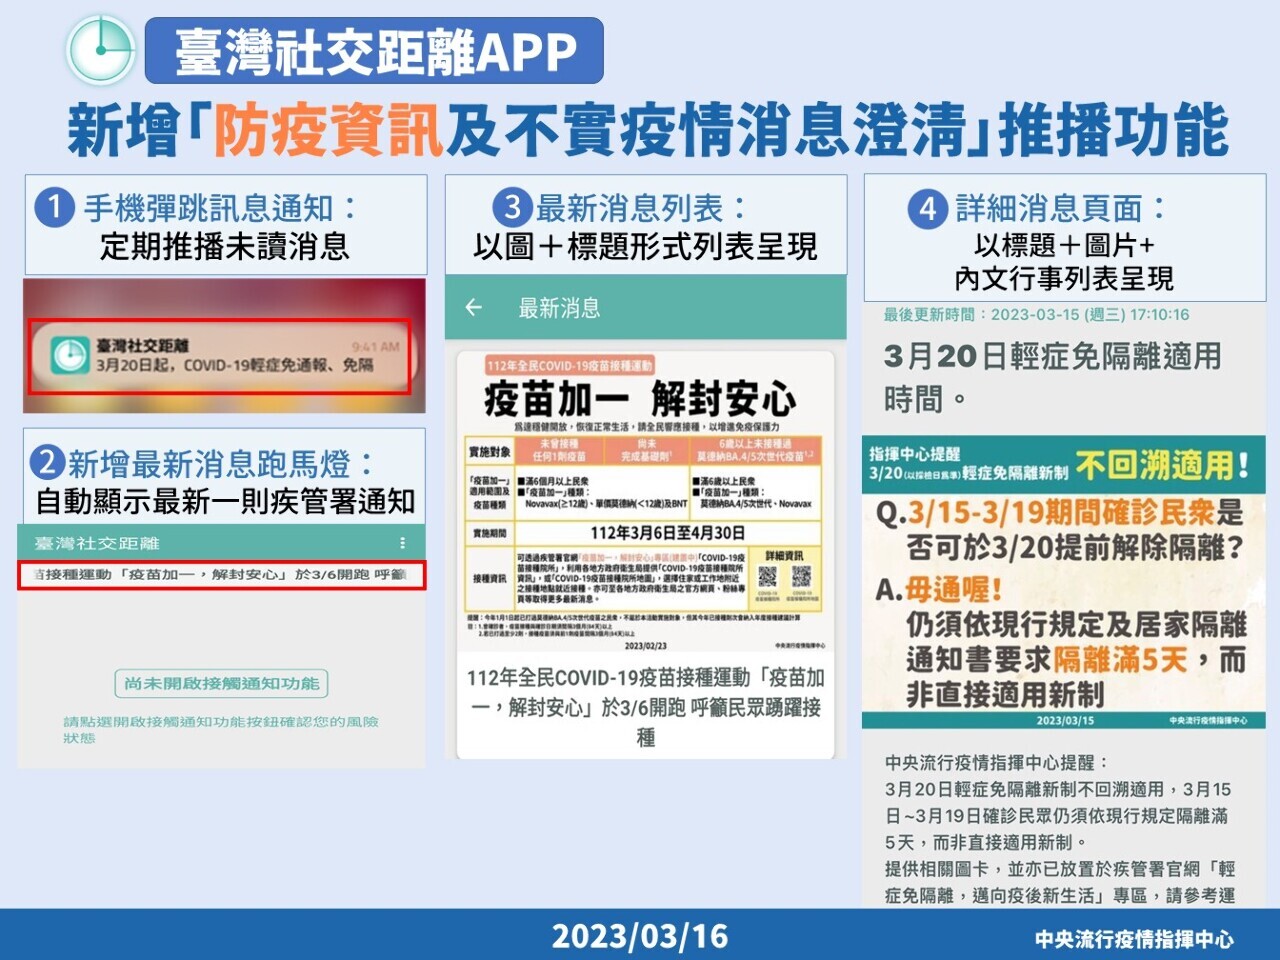 Từ ngày 27/3, ứng dụng “Khoảng cách giao tiếp xã hội Đài Loan” sẽ ngừng các tính năng như “thông báo tình trạng tiếp xúc hàng ngày” và “người bị nhiễm COVID-19 tải ID ngẫu nhiên lên hệ thống”. (Nguồn ảnh: Trung tâm Chỉ huy phòng chống dịch bệnh Trung ương Đài Loan)